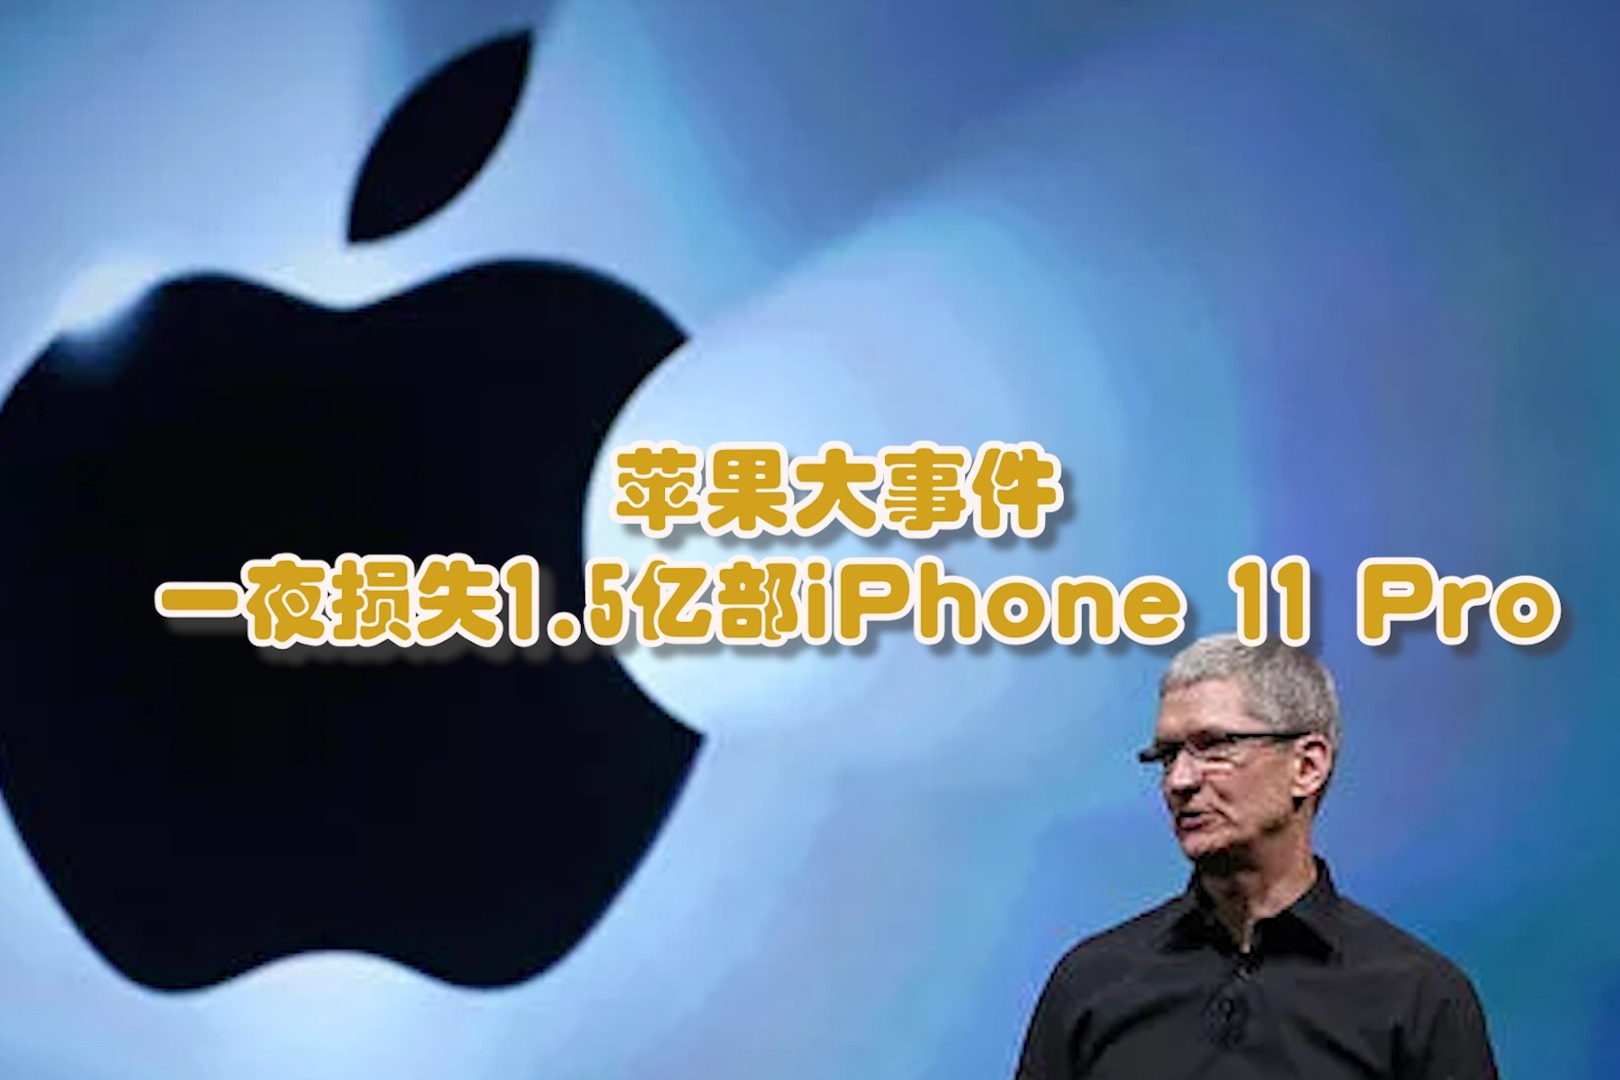 苹果大事件一夜损失1.5亿部iPhone 11 Pro